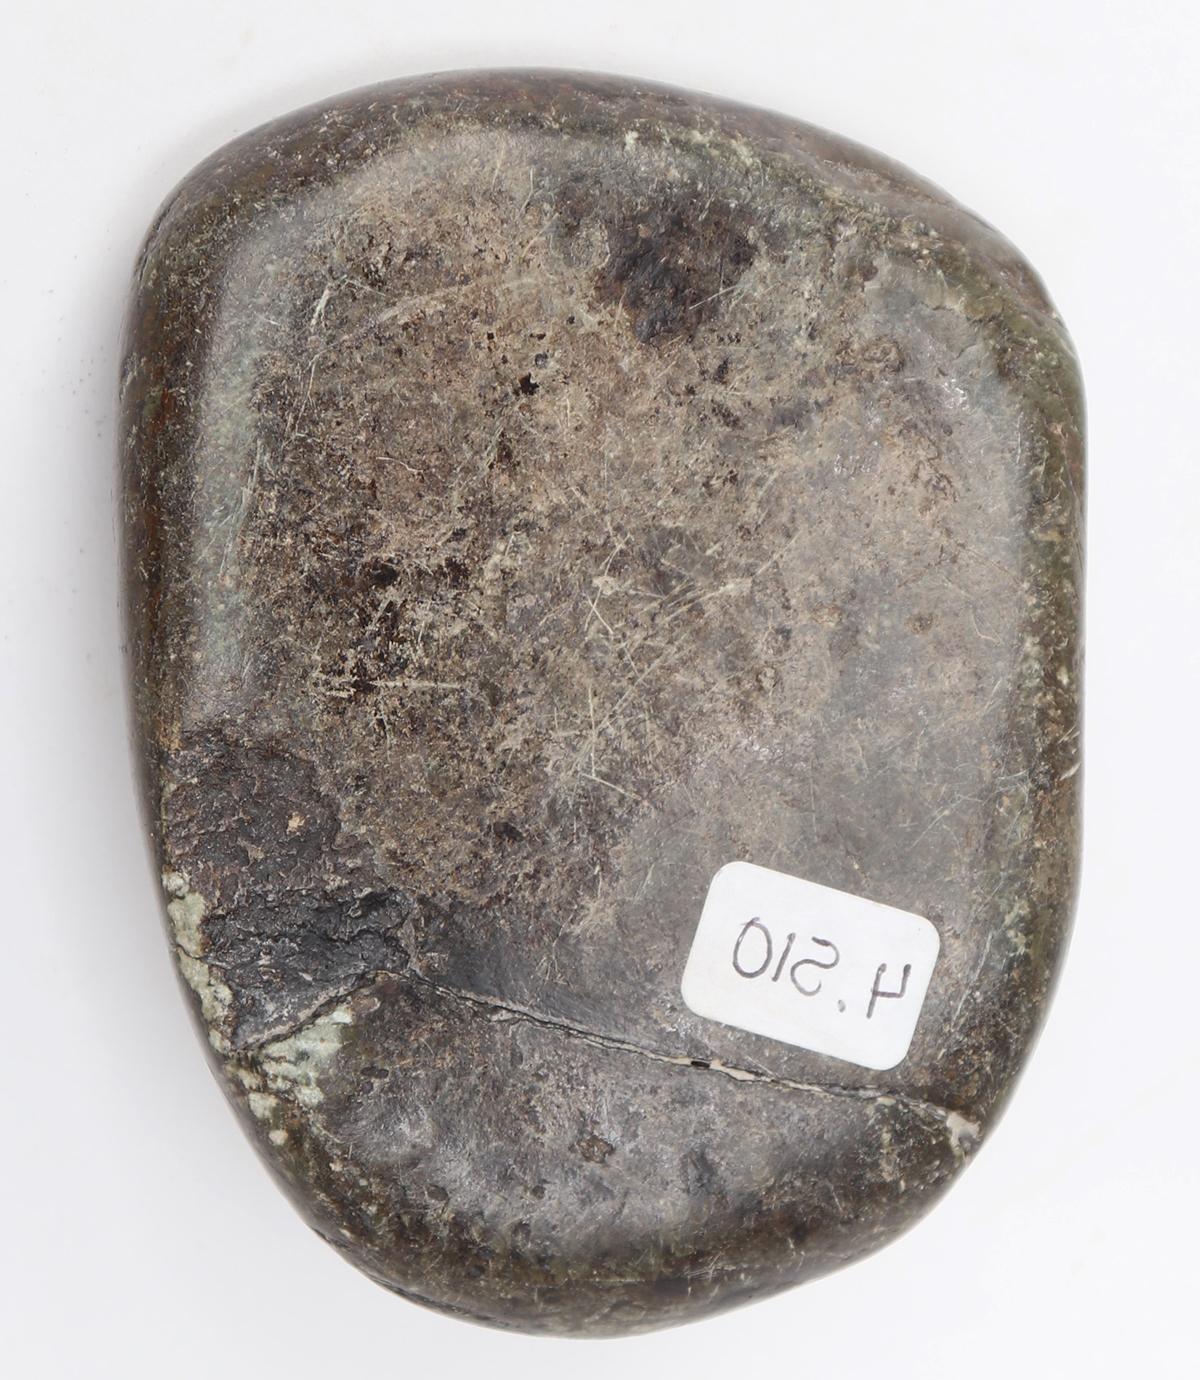 Olmec / Olmecoid Mask greenstone, 900 - 600 BCE or Earlier